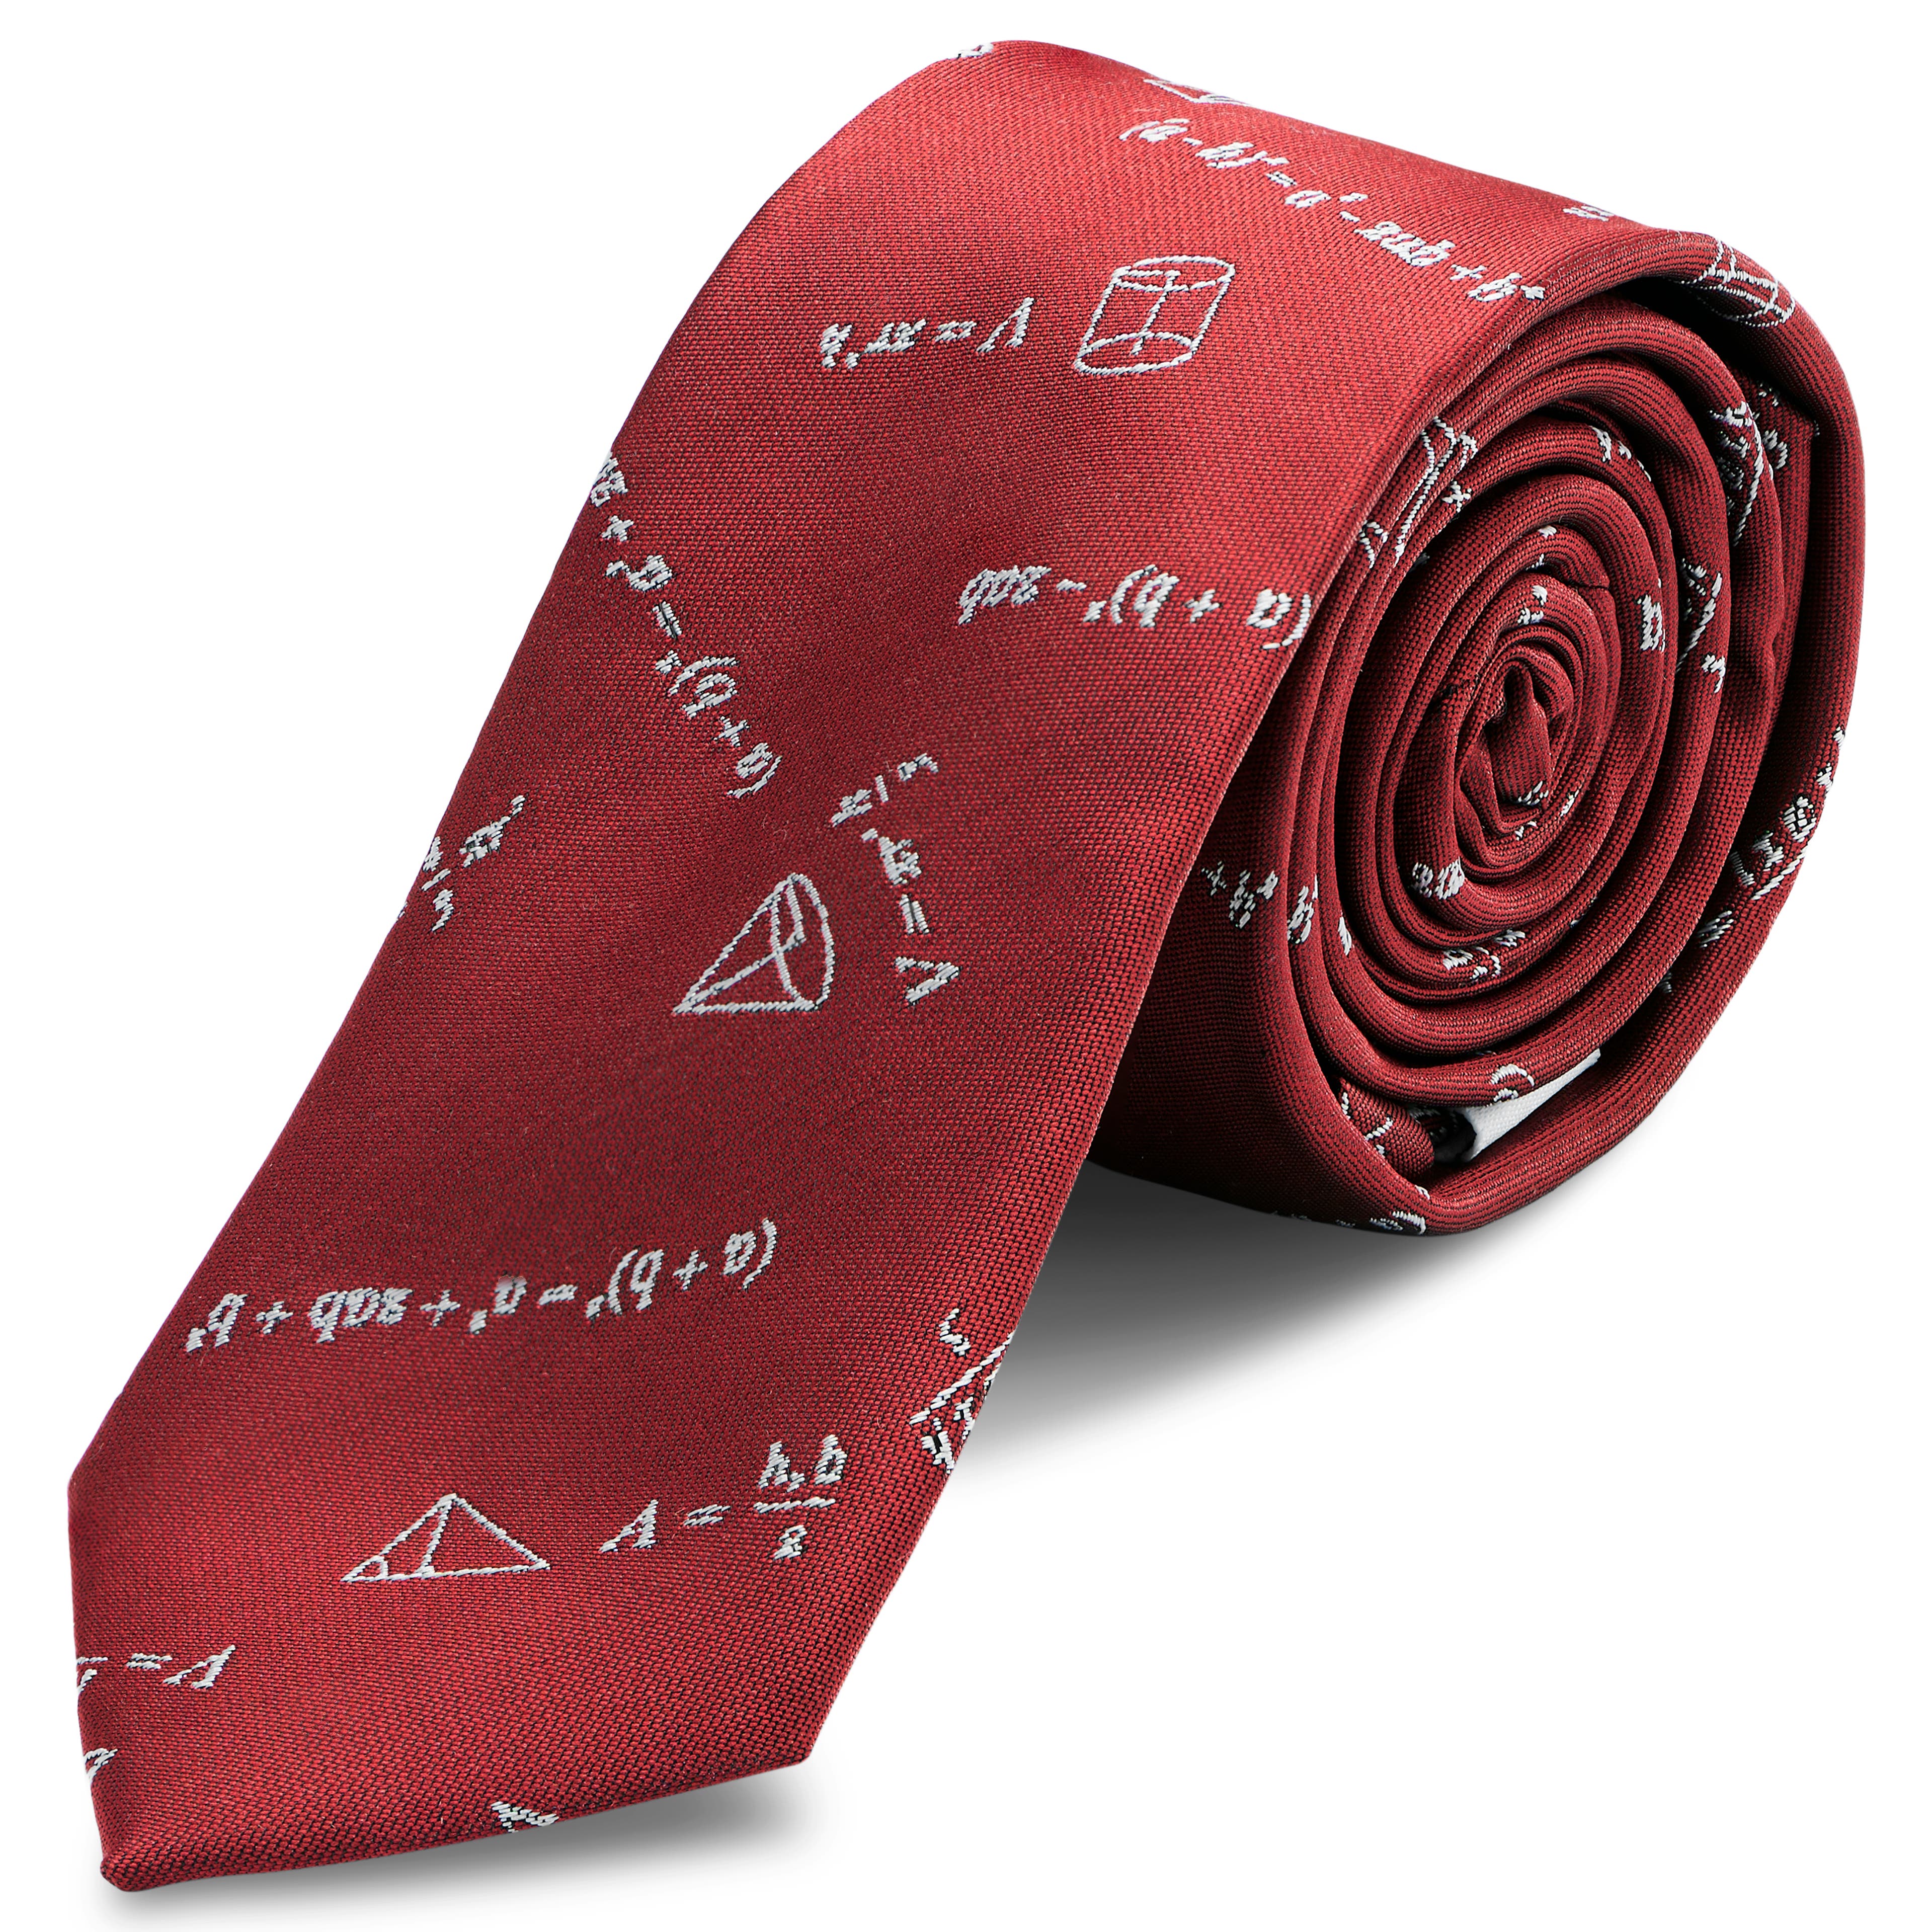 Cravată îngustă burgundie cu ecuații matematice